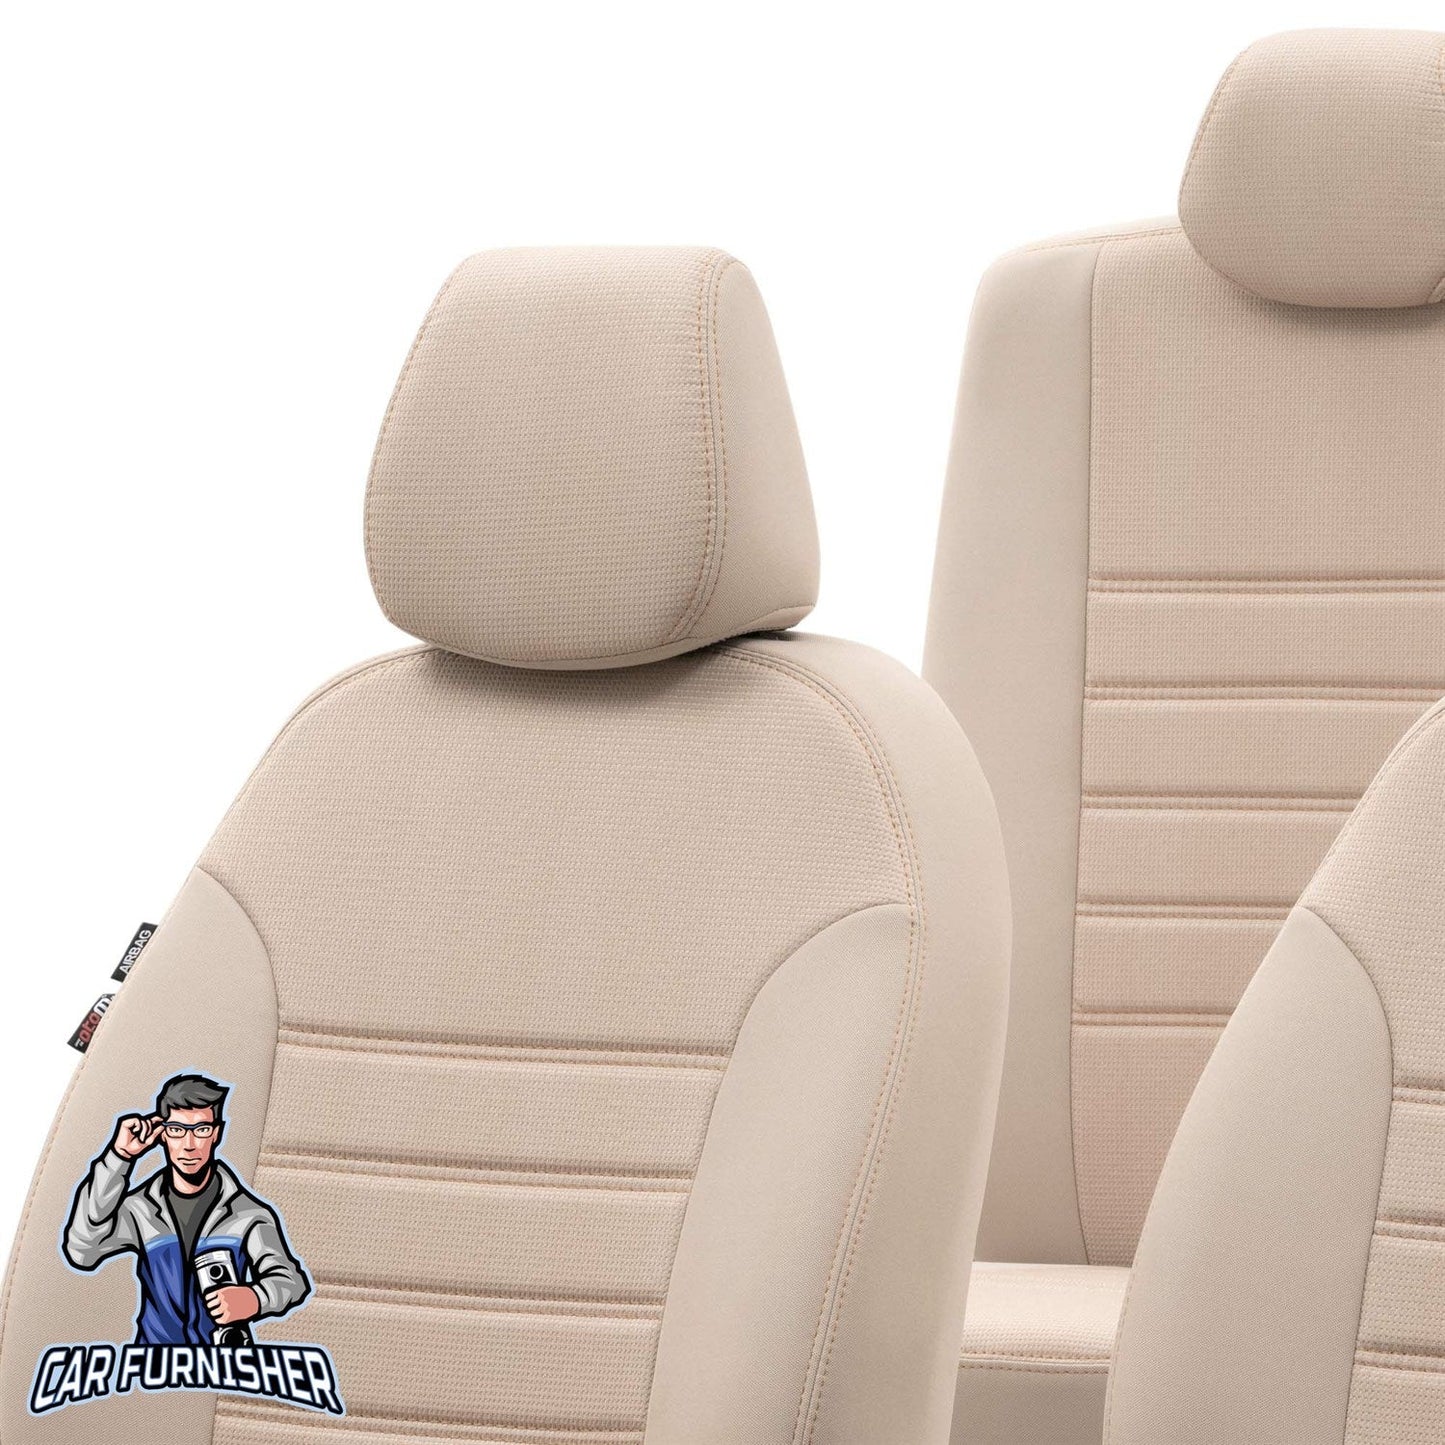 Mercedes B Class Seat Covers Original Jacquard Design Beige Jacquard Fabric